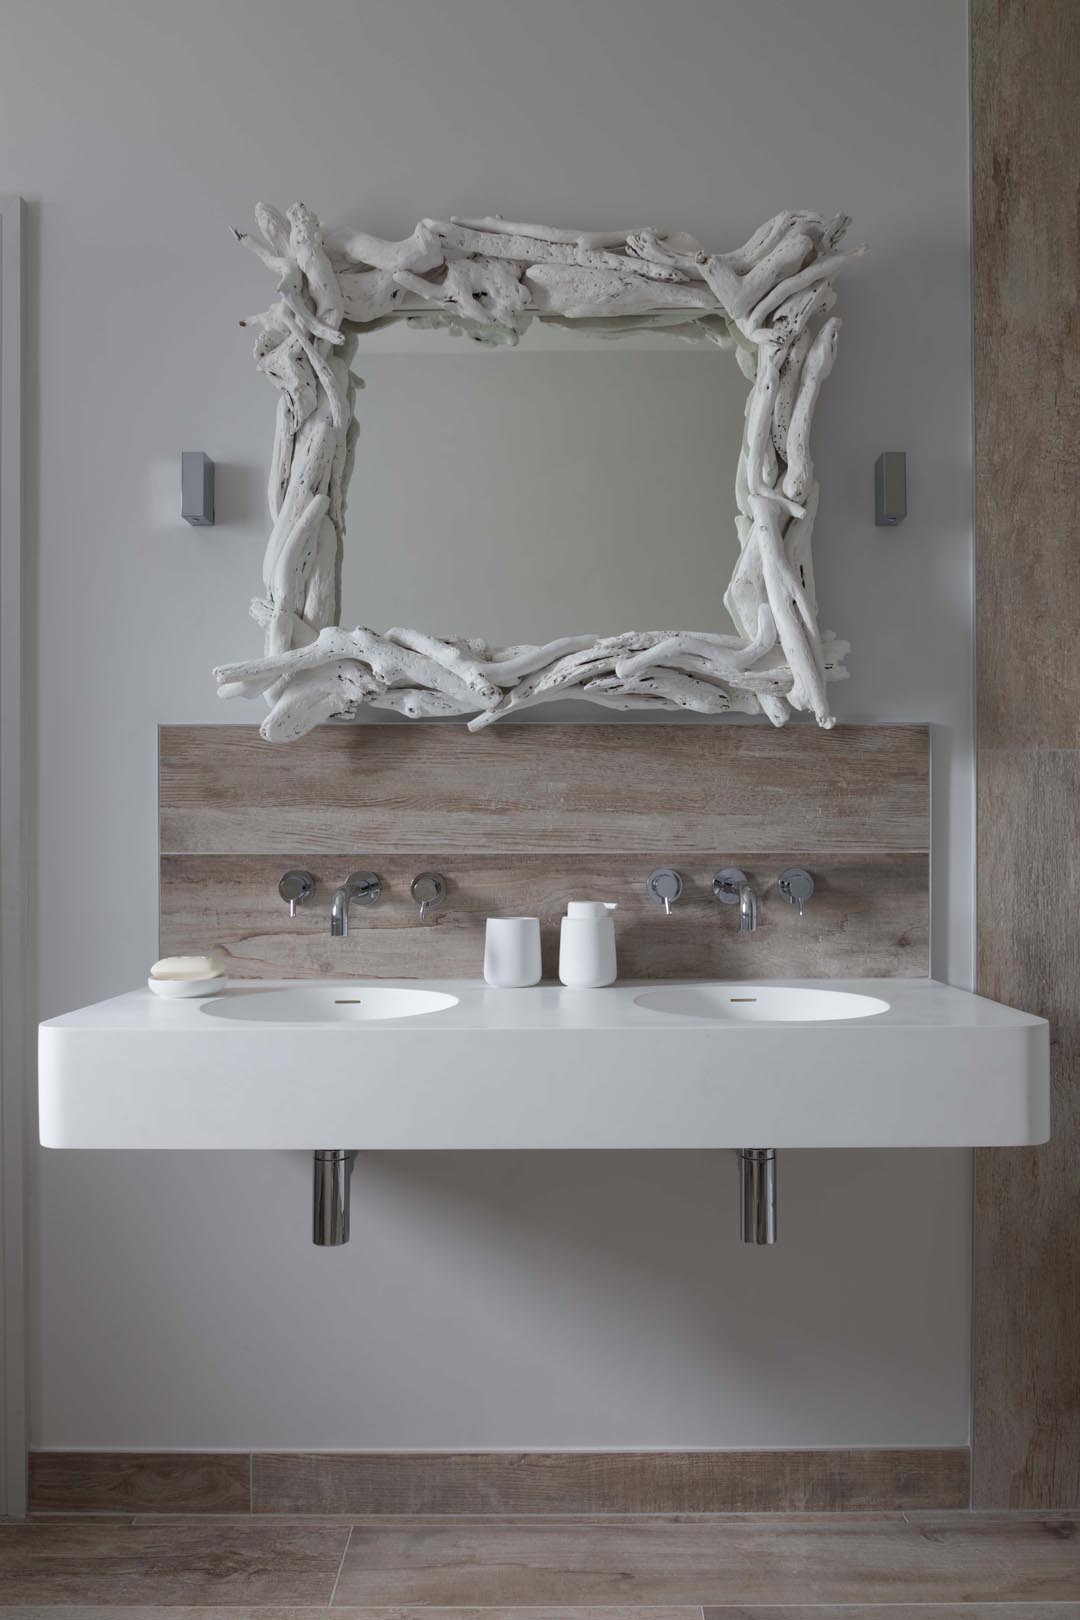 Cart Shed bathroom basins with whitewash wood mirror